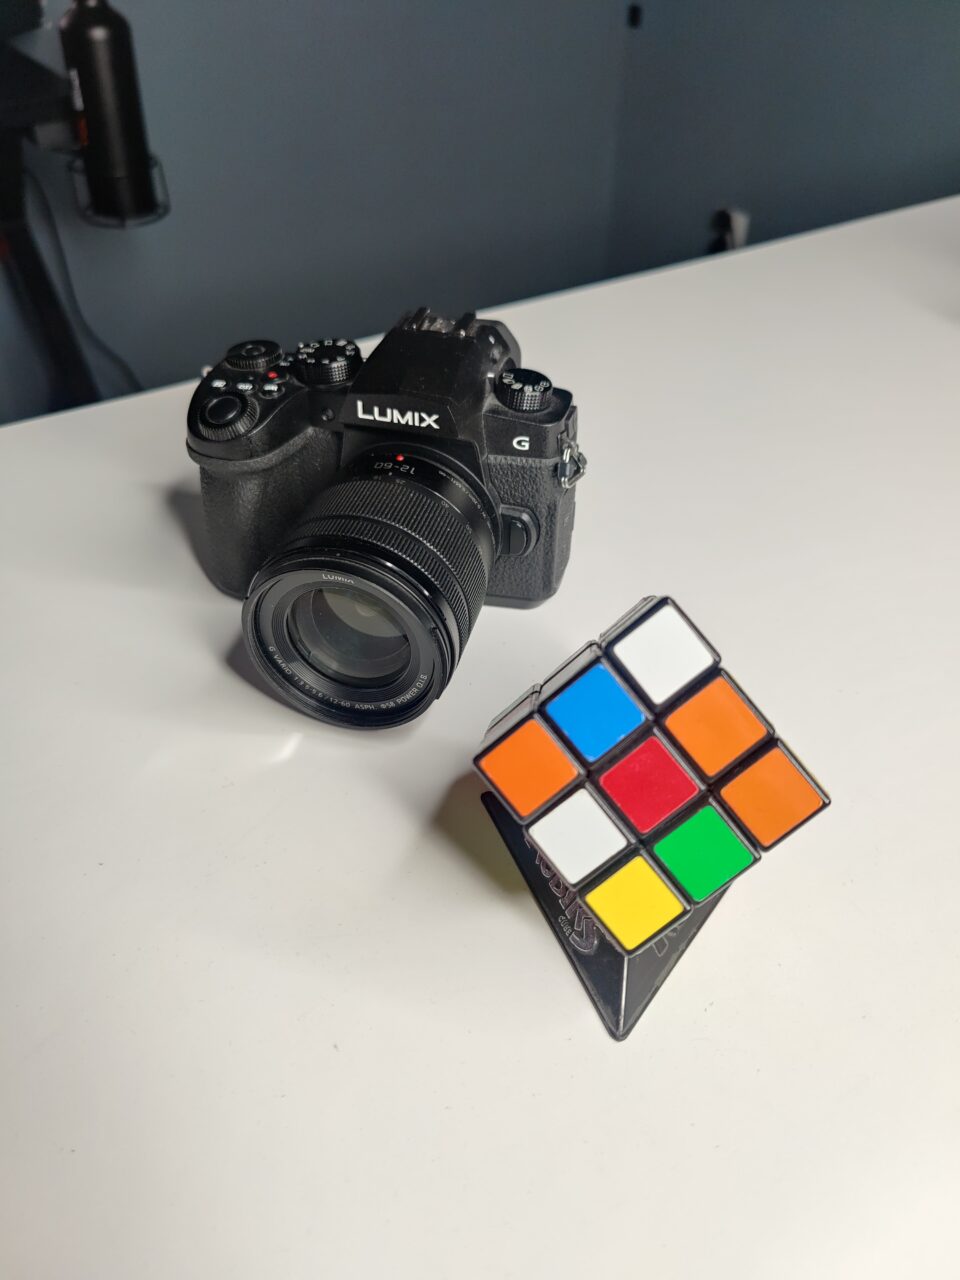 Aparat fotograficzny marki Lumix umieszczony na białej powierzchni w tle, z prawej strony w pierwszym planie częściowo rozwiązana kostka Rubika.